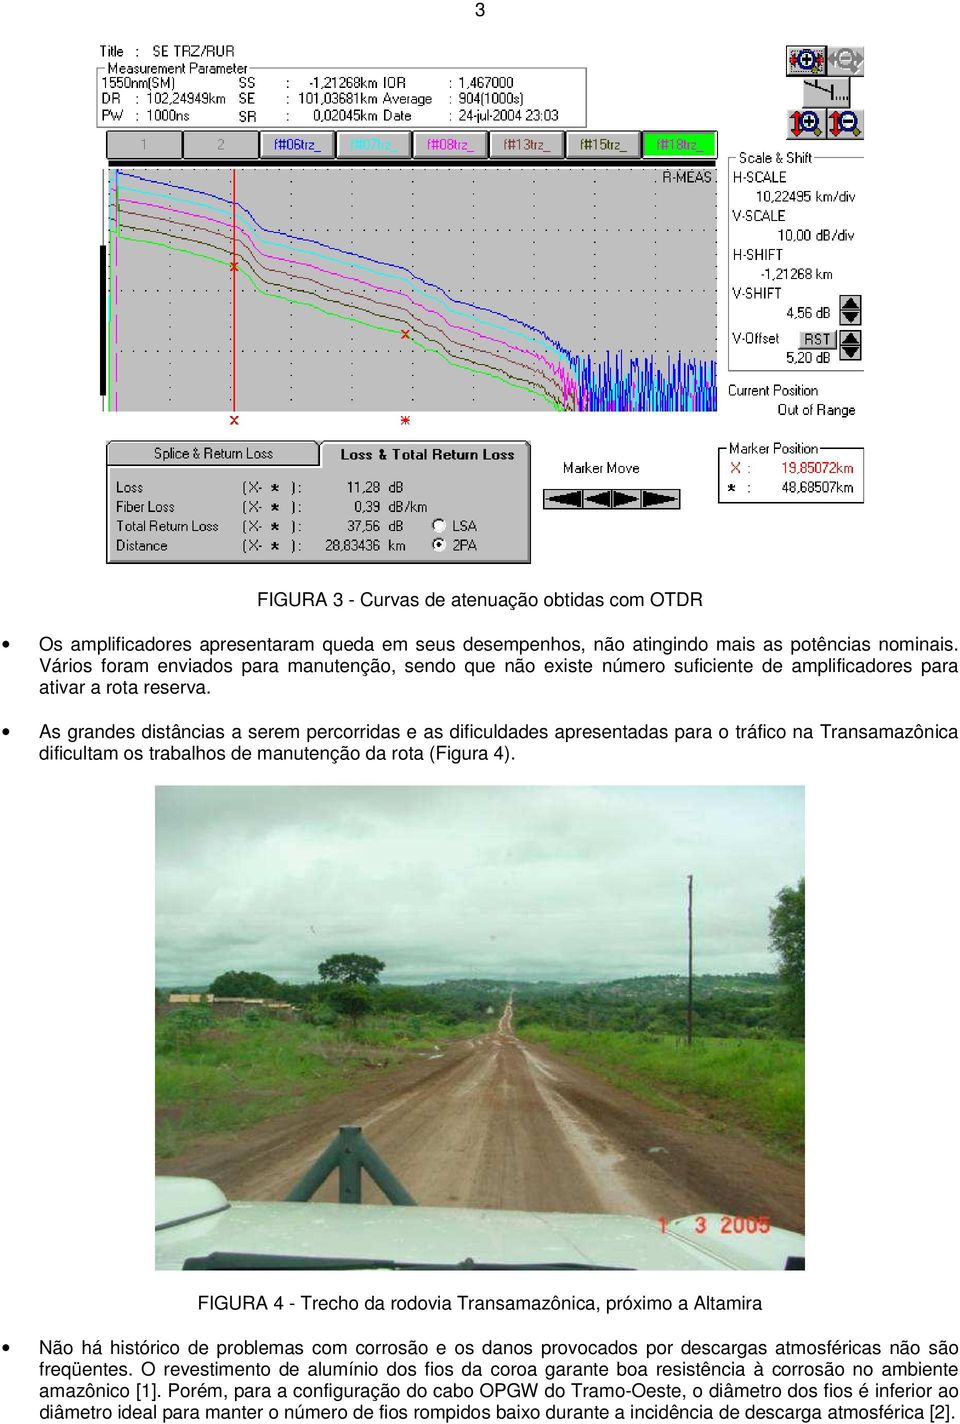 As grandes distâncias a serem percorridas e as dificuldades apresentadas para o tráfico na Transamazônica dificultam os trabalhos de manutenção da rota (Figura 4).